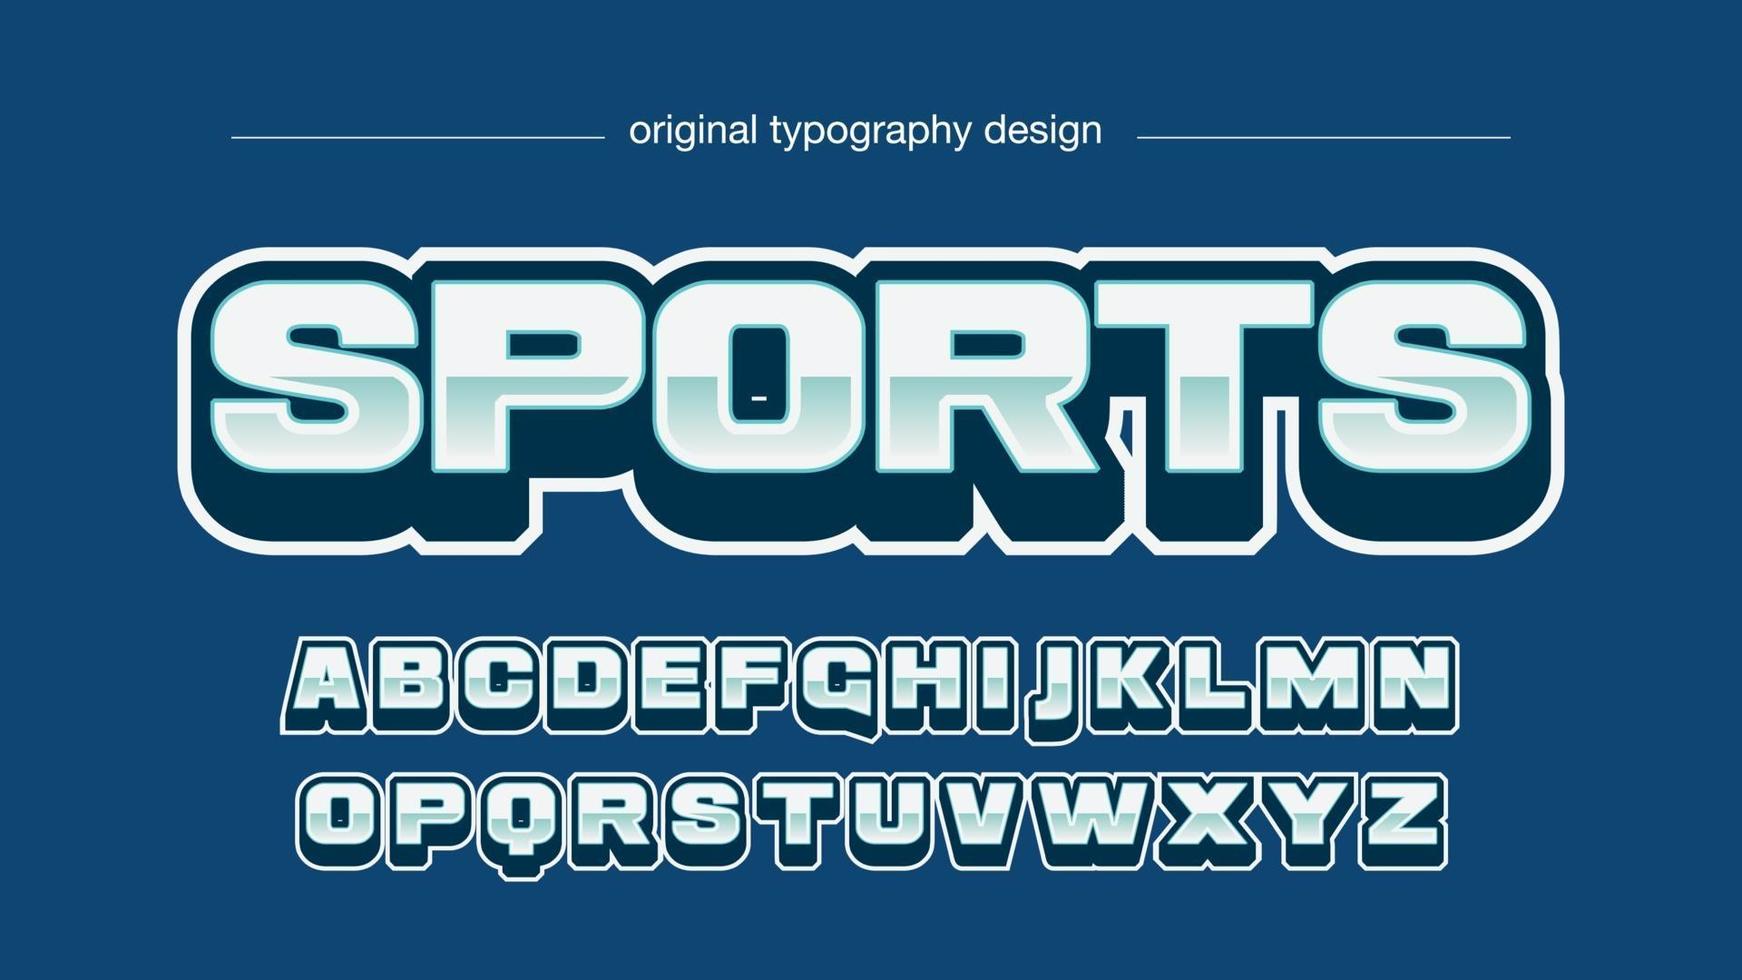 tipografia de esportes 3D azul e metálica vetor